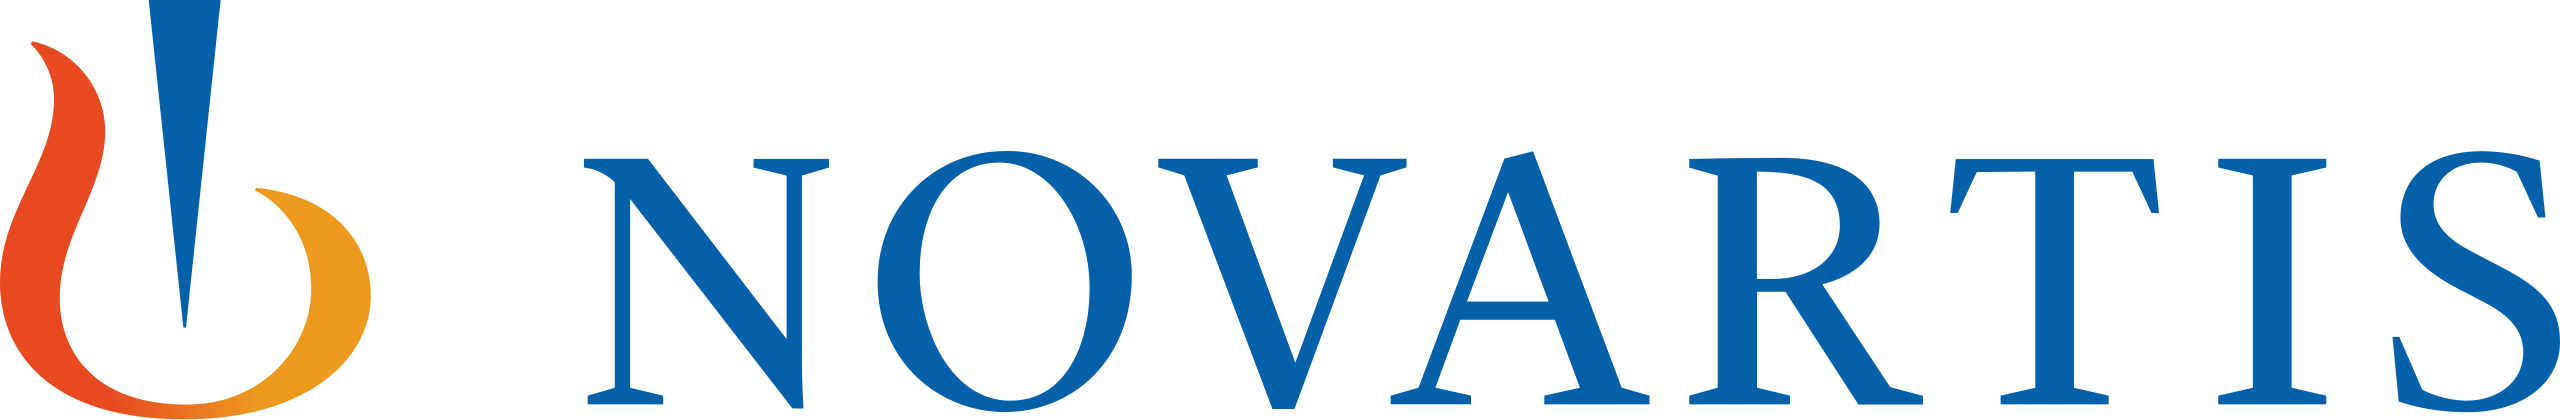 2560px novartis logo.svg